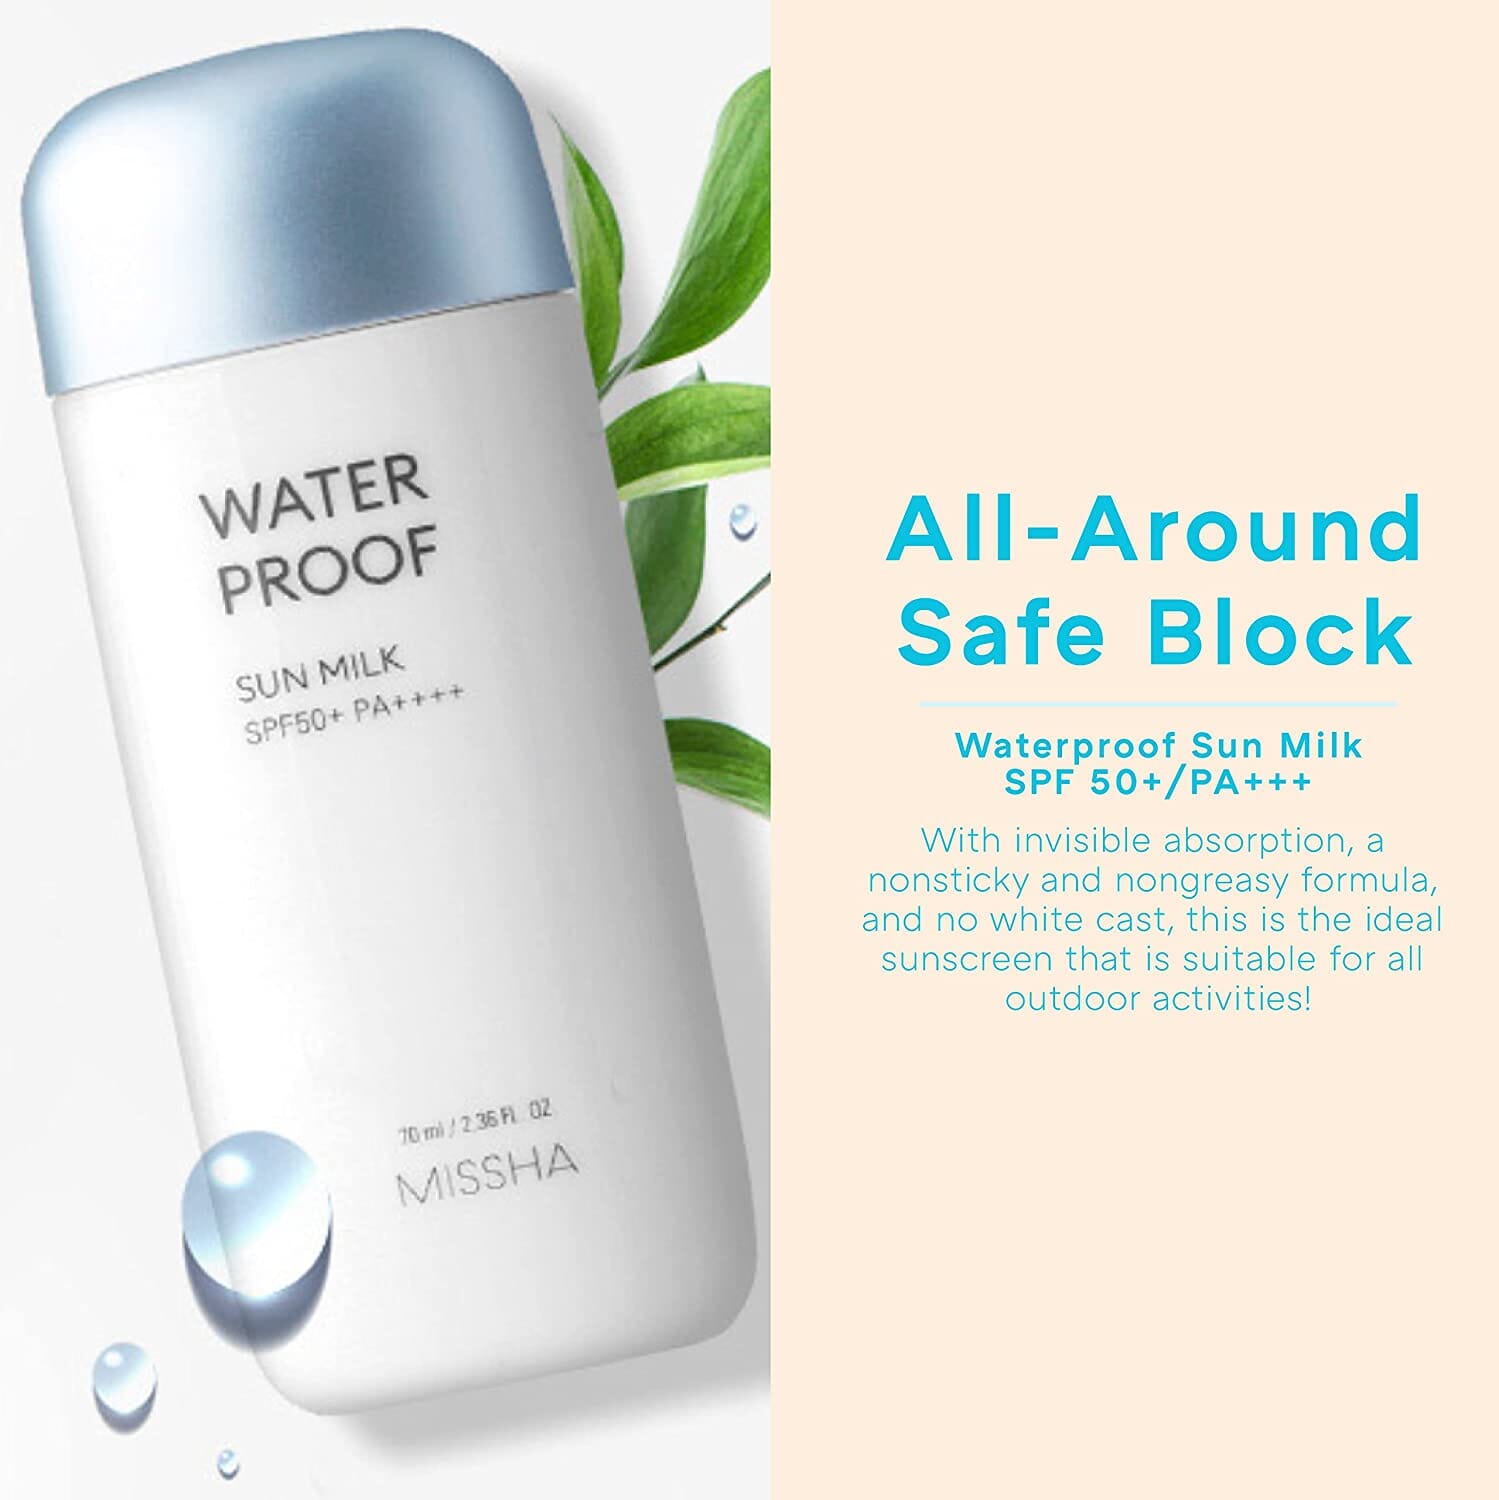 MIssha All-Around Safe Block Waterproof Sun Milk SPF50+ PA++++ 70ml Skin Care Missha ORION XO Sri Lanka